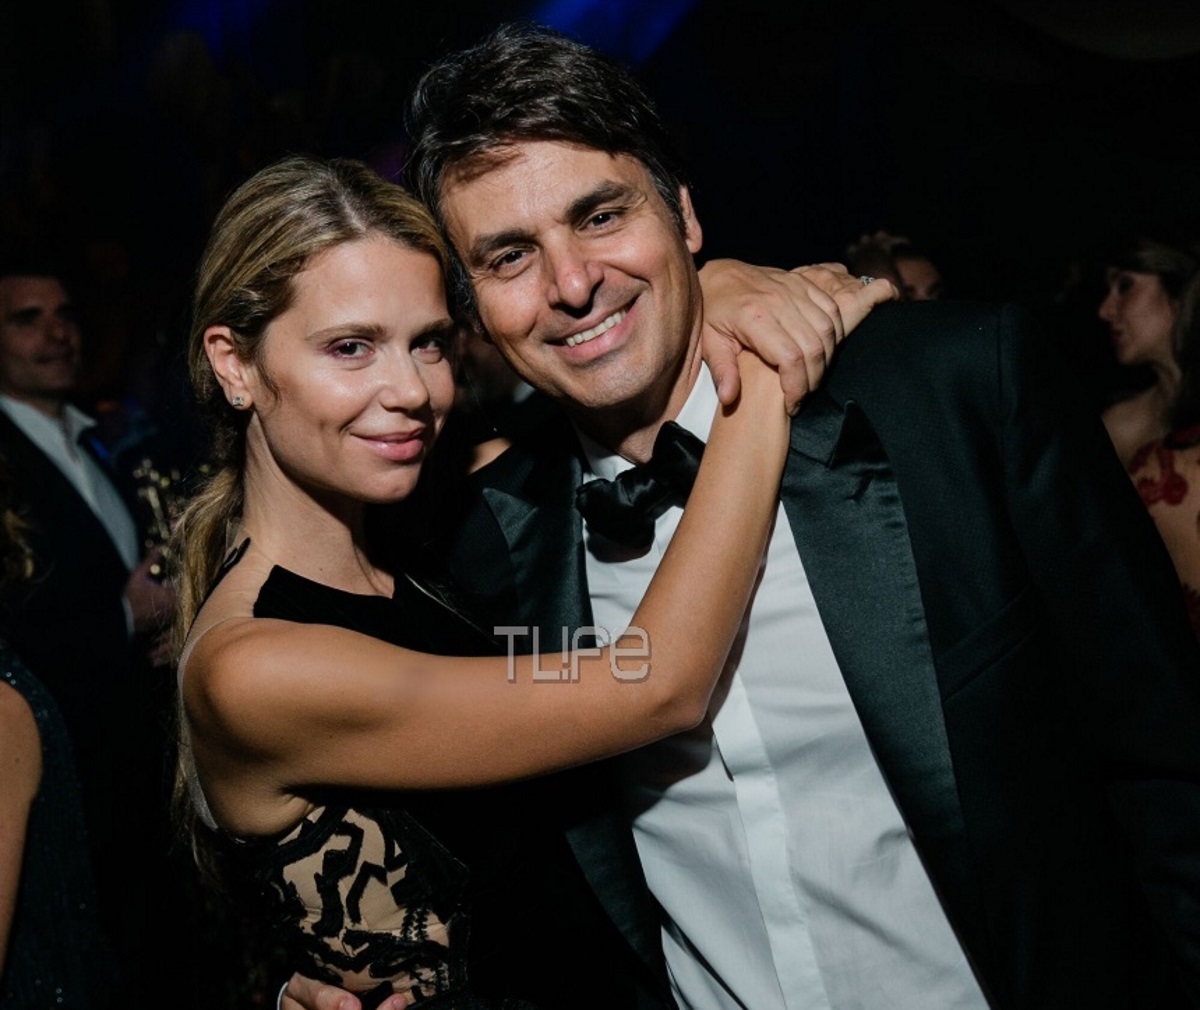 Νίκος Κριθαριώτης – Ναστάζια Δαρίβα: Αγκαλιά στον γάμο της χρονιάς! Η φωτογραφία που δεν είχαμε ξαναδεί